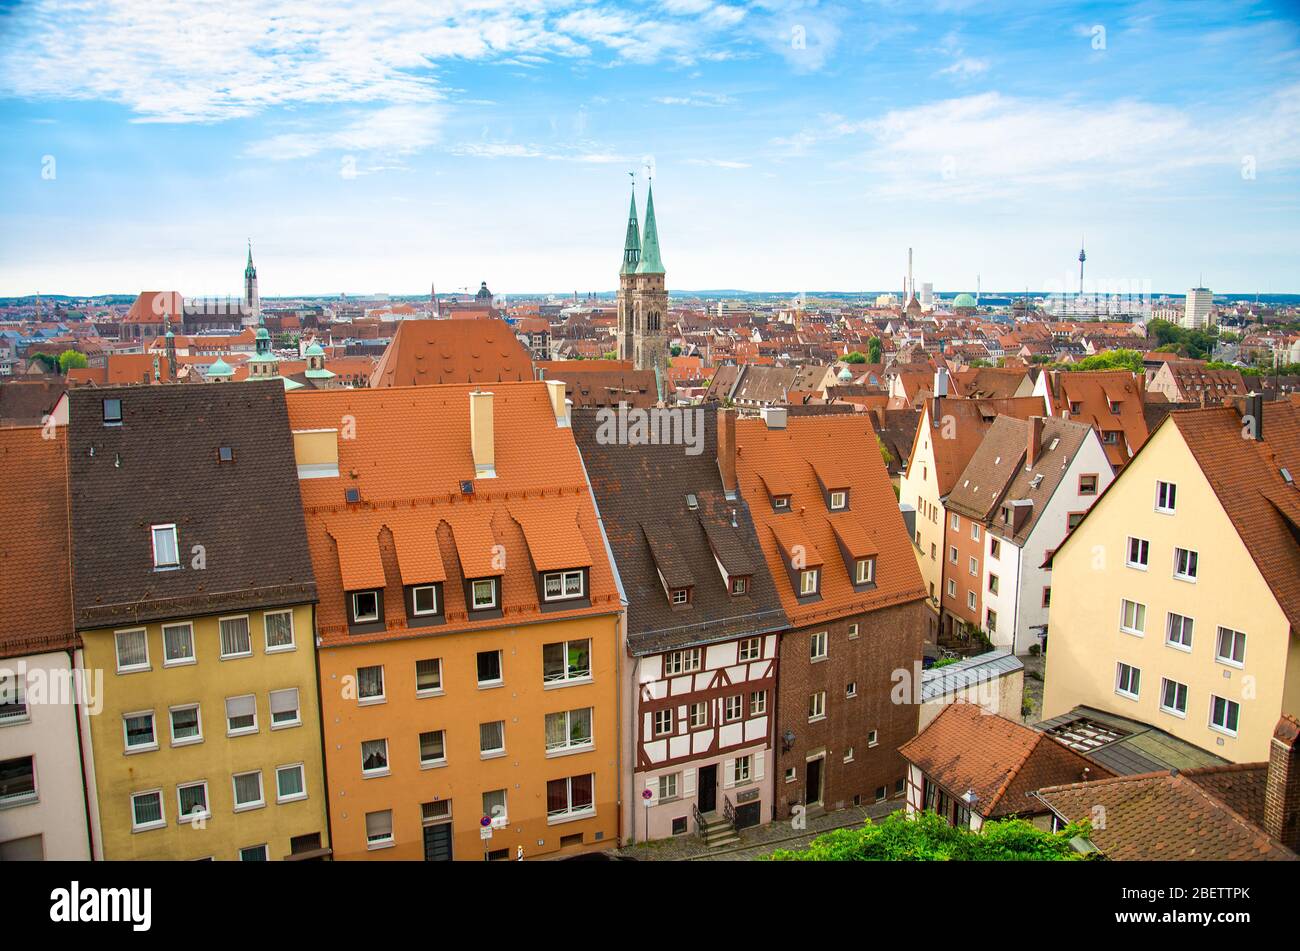 Vue panoramique sur les toits de la vieille ville historique de Nuremberg Nurnberg, région de Mittelfranken, Bavière, Allemagne Banque D'Images